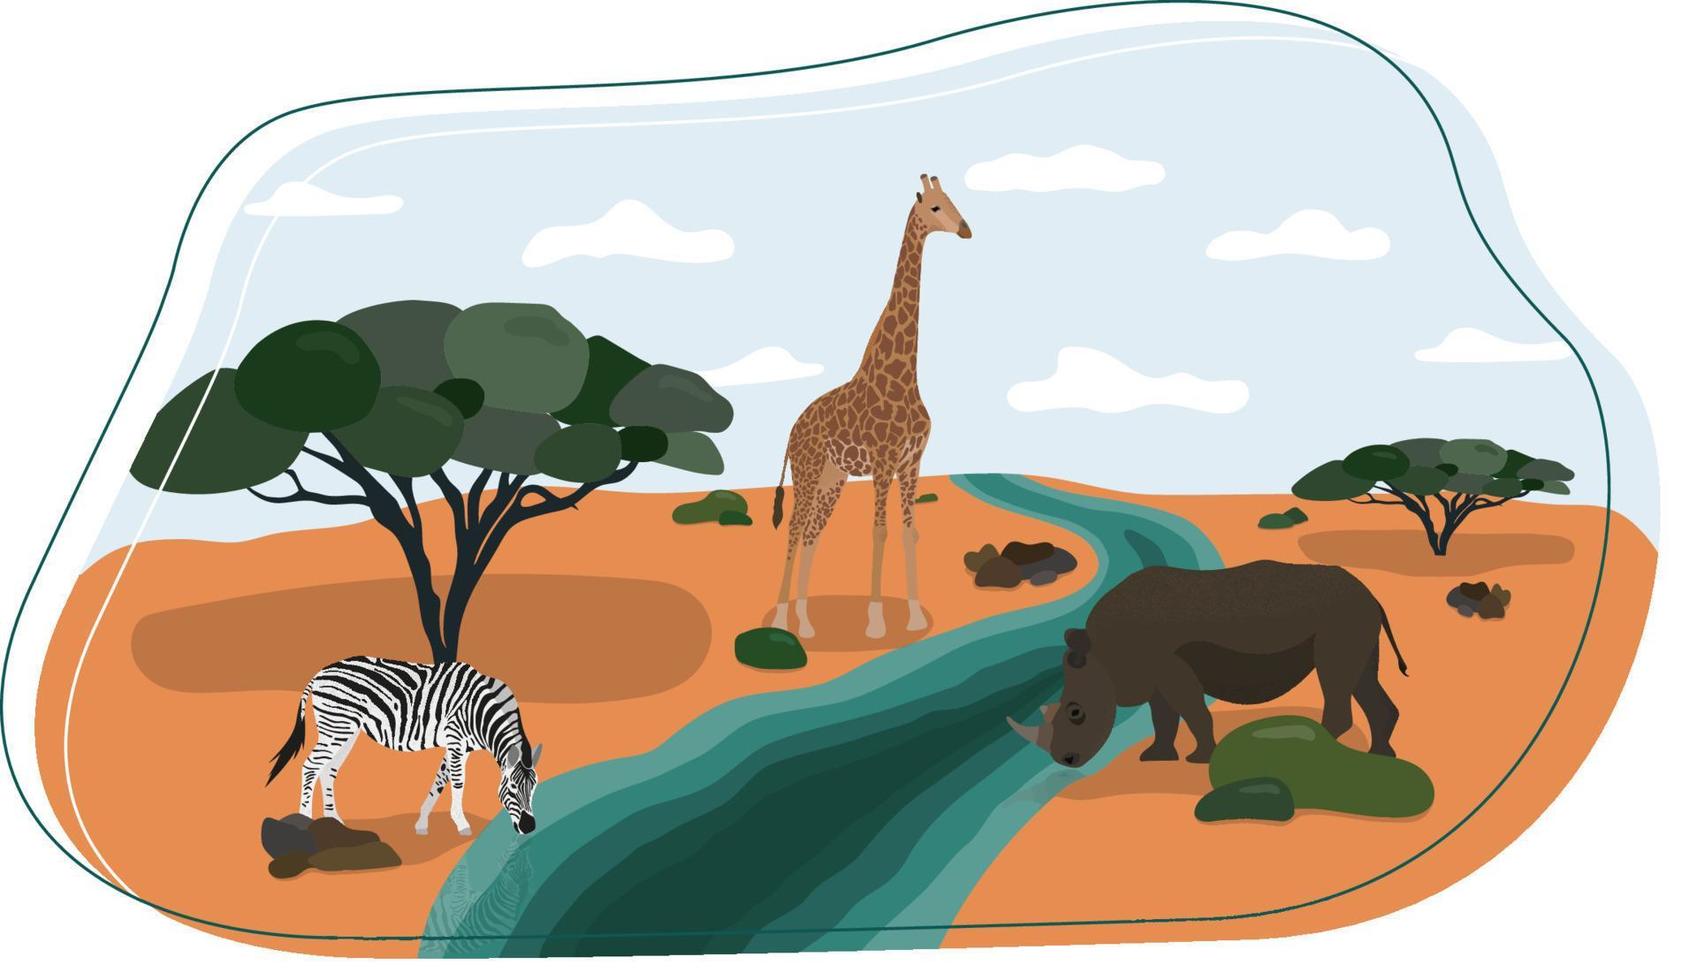 animais selvagens na savana. hipopótamo, zebra e girafa. bela ilustração em estilo simples vetor